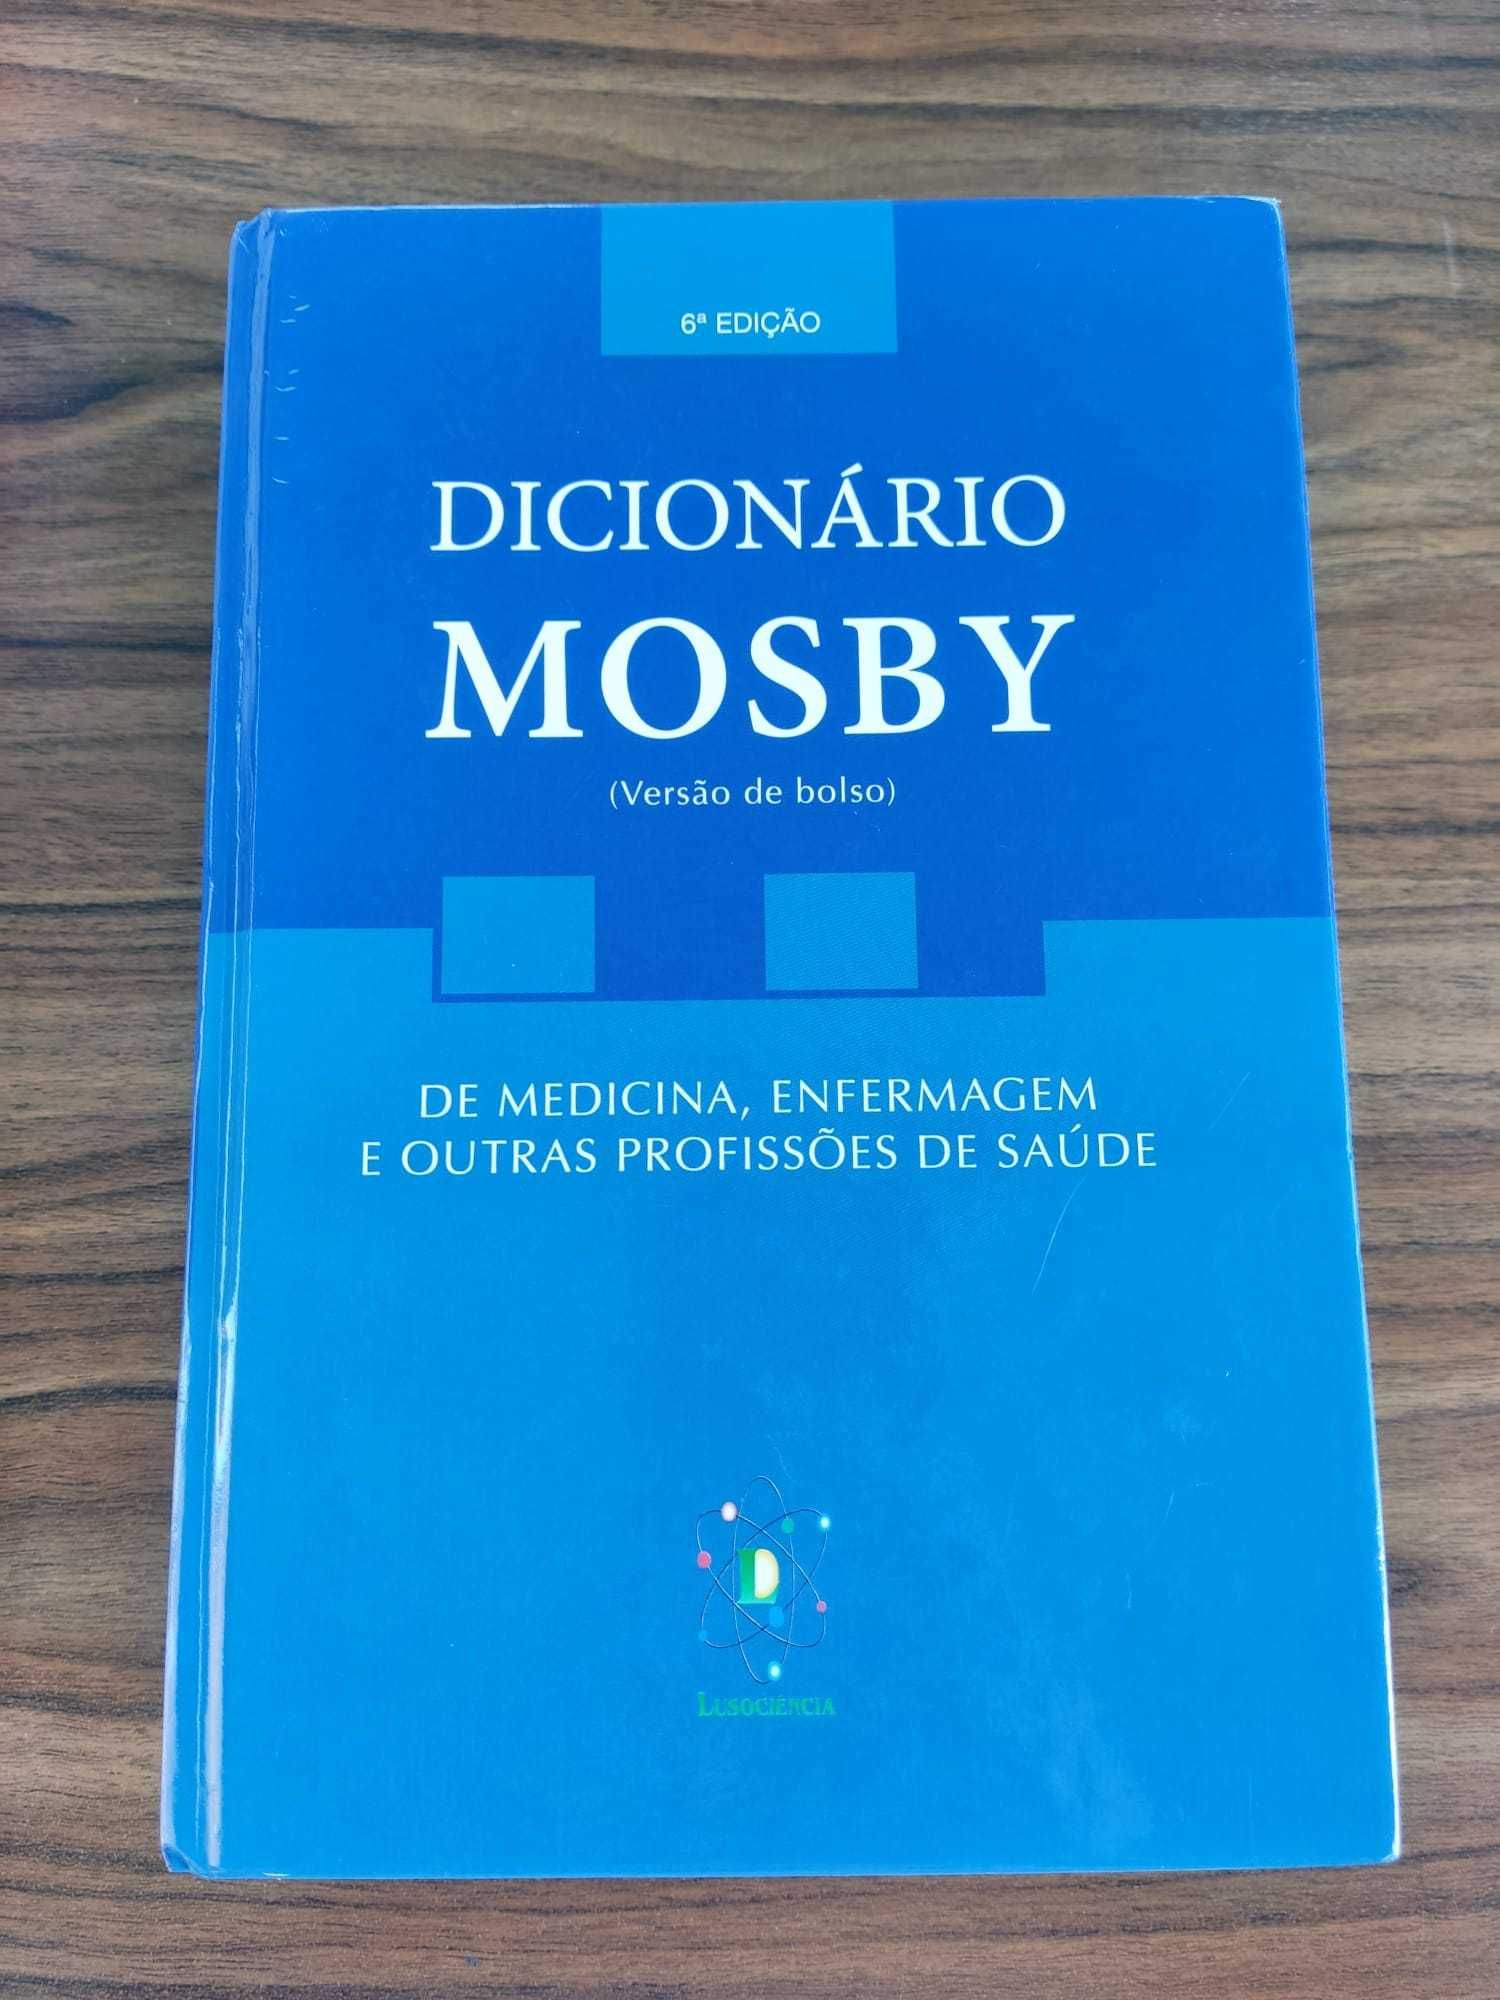 Enfermagem - Dicionário Mosby 6º Edição